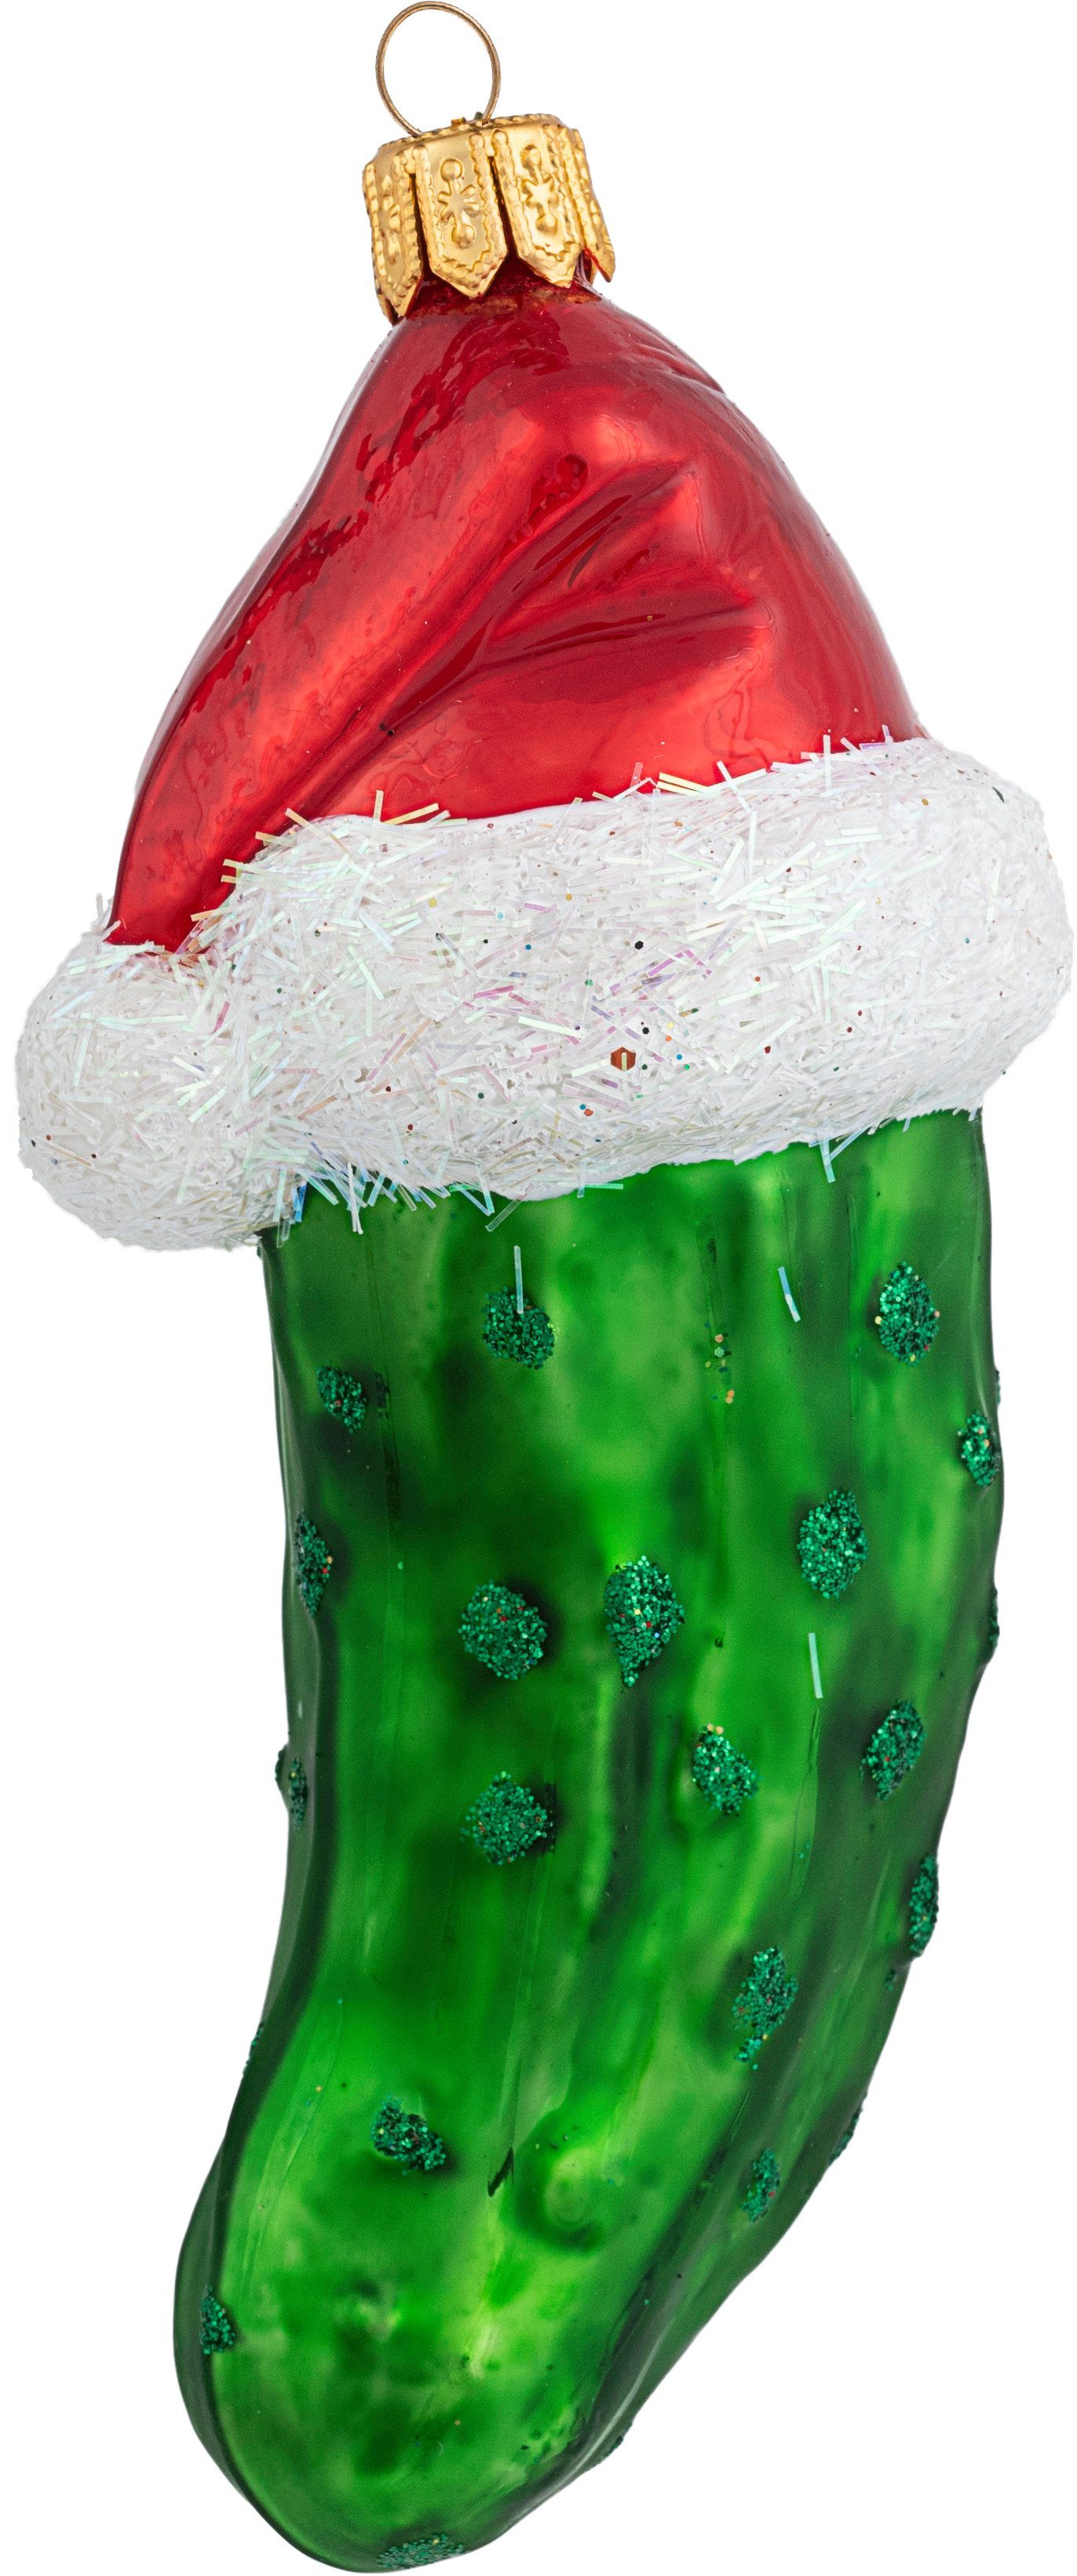 IMPULS Christbaumschmuck, Christbaumschmuck Weihnachtsgurke mit Mütze Glas 10cm grün